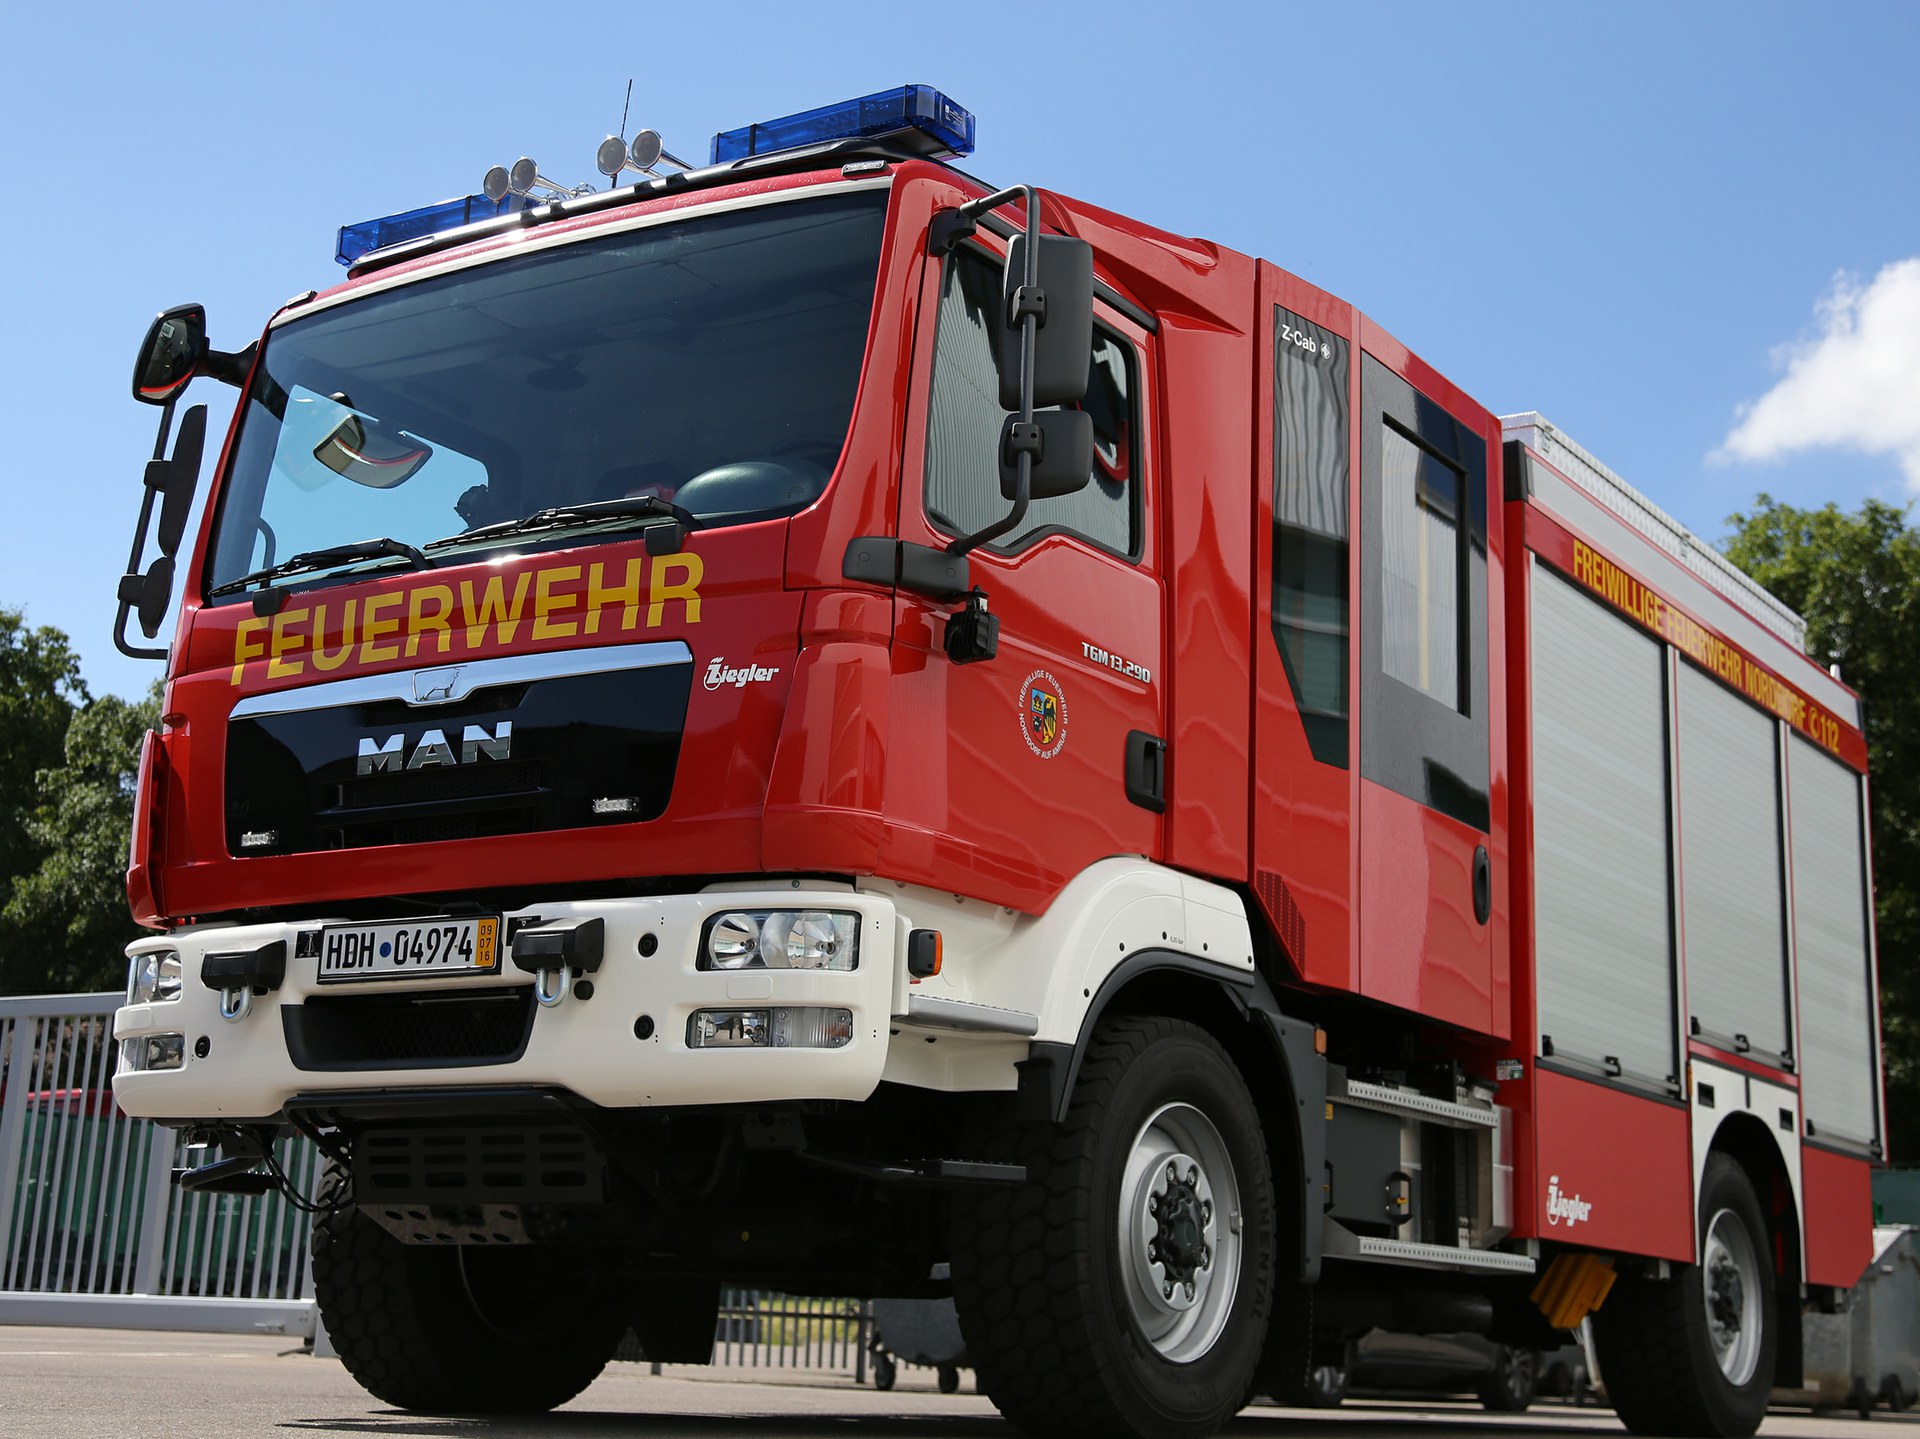 Ziegler Lf 10 An Die Fw Norddorf Auf Amrum Ziegler Feuerwehrfahrzeuge